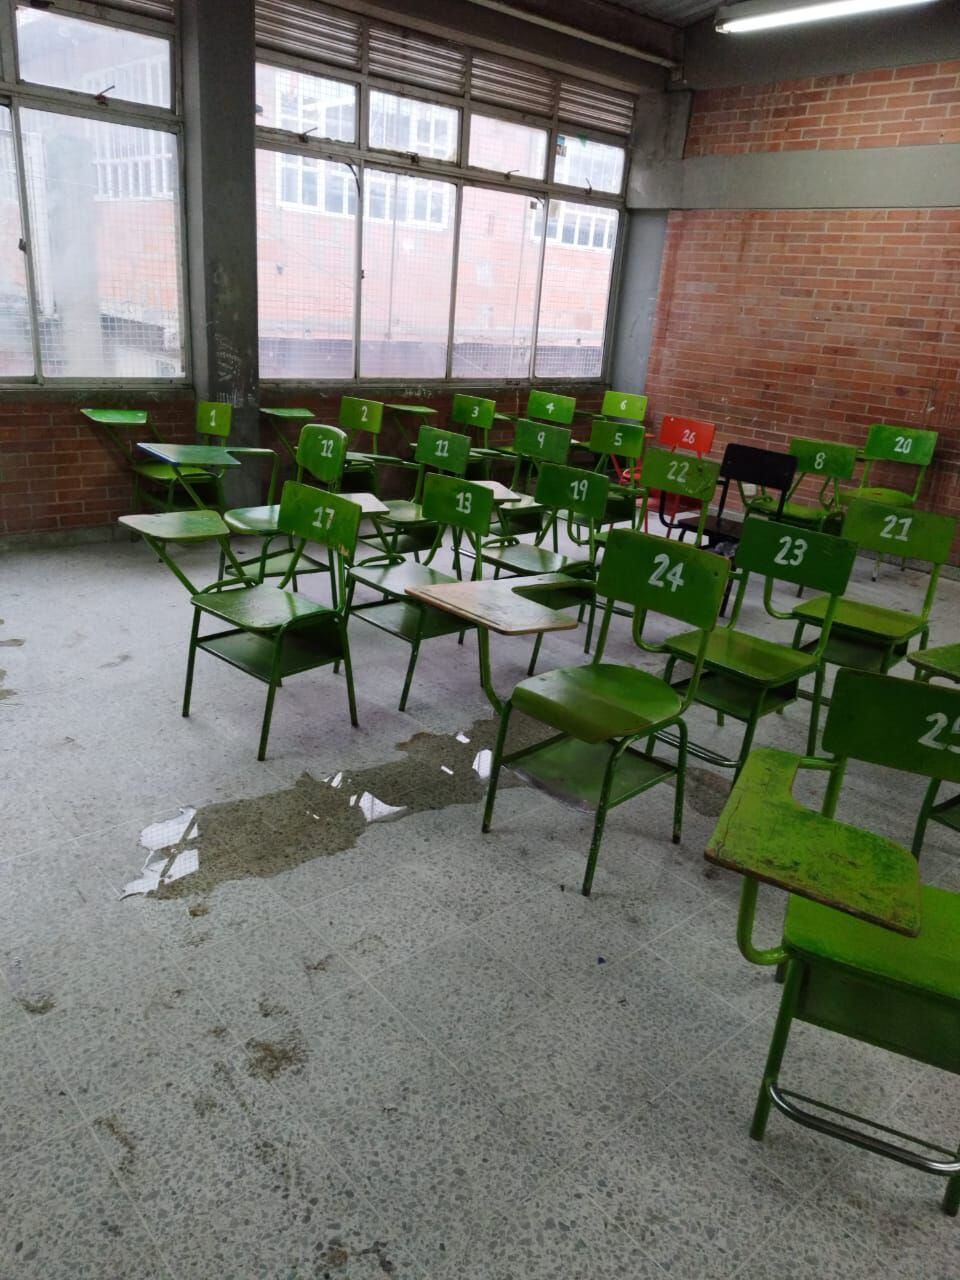 Las aulas están inundadas y con excremento de paloma.